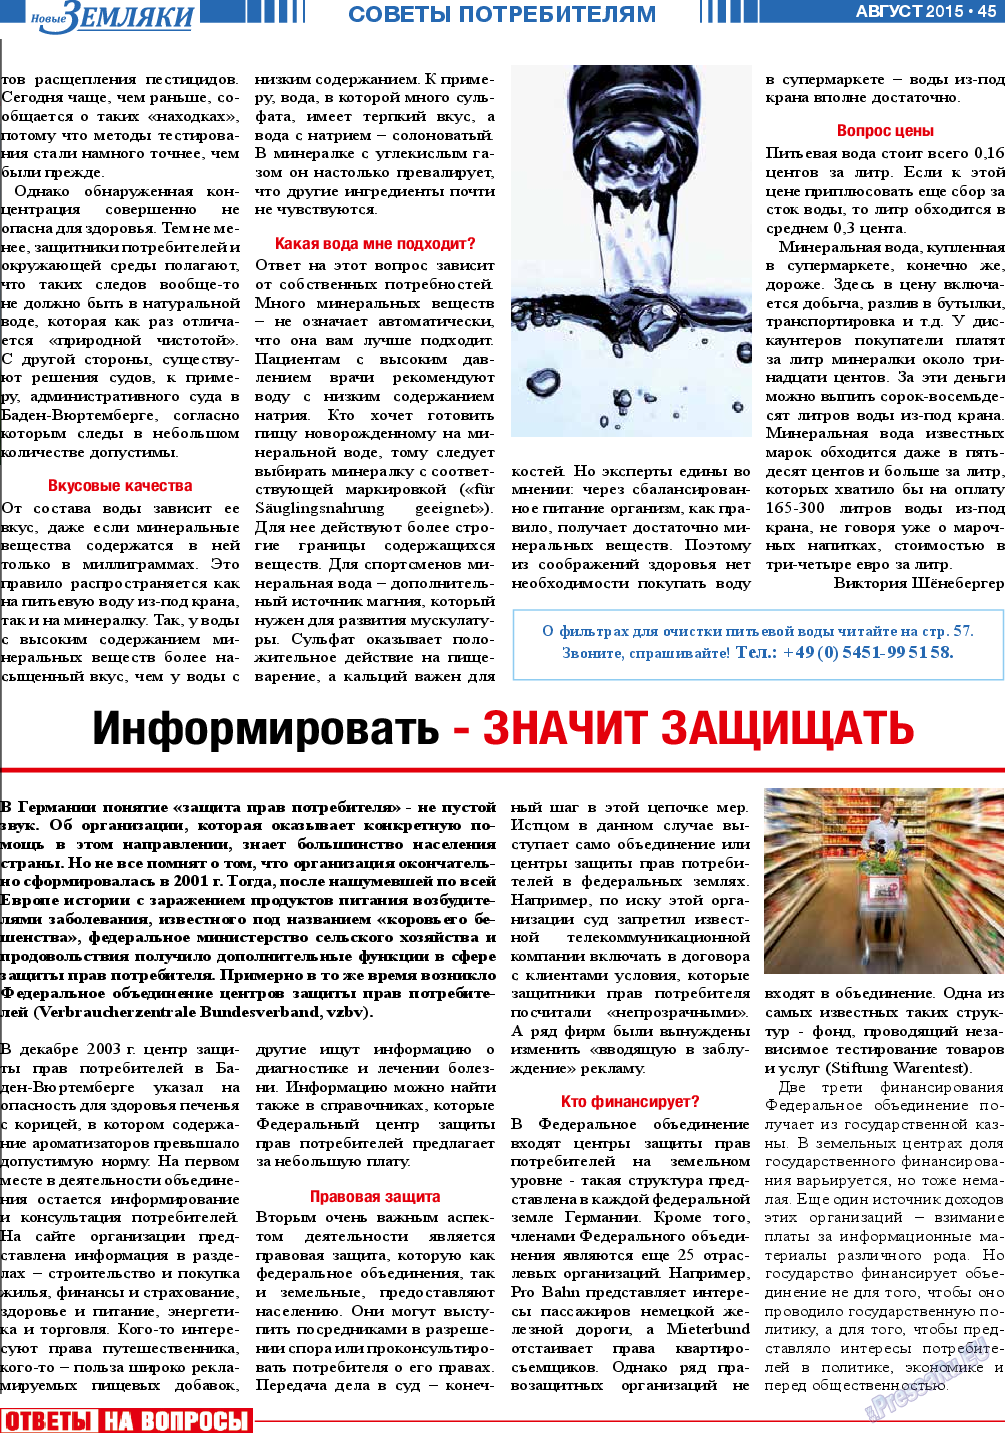 Новые Земляки, газета. 2015 №8 стр.45